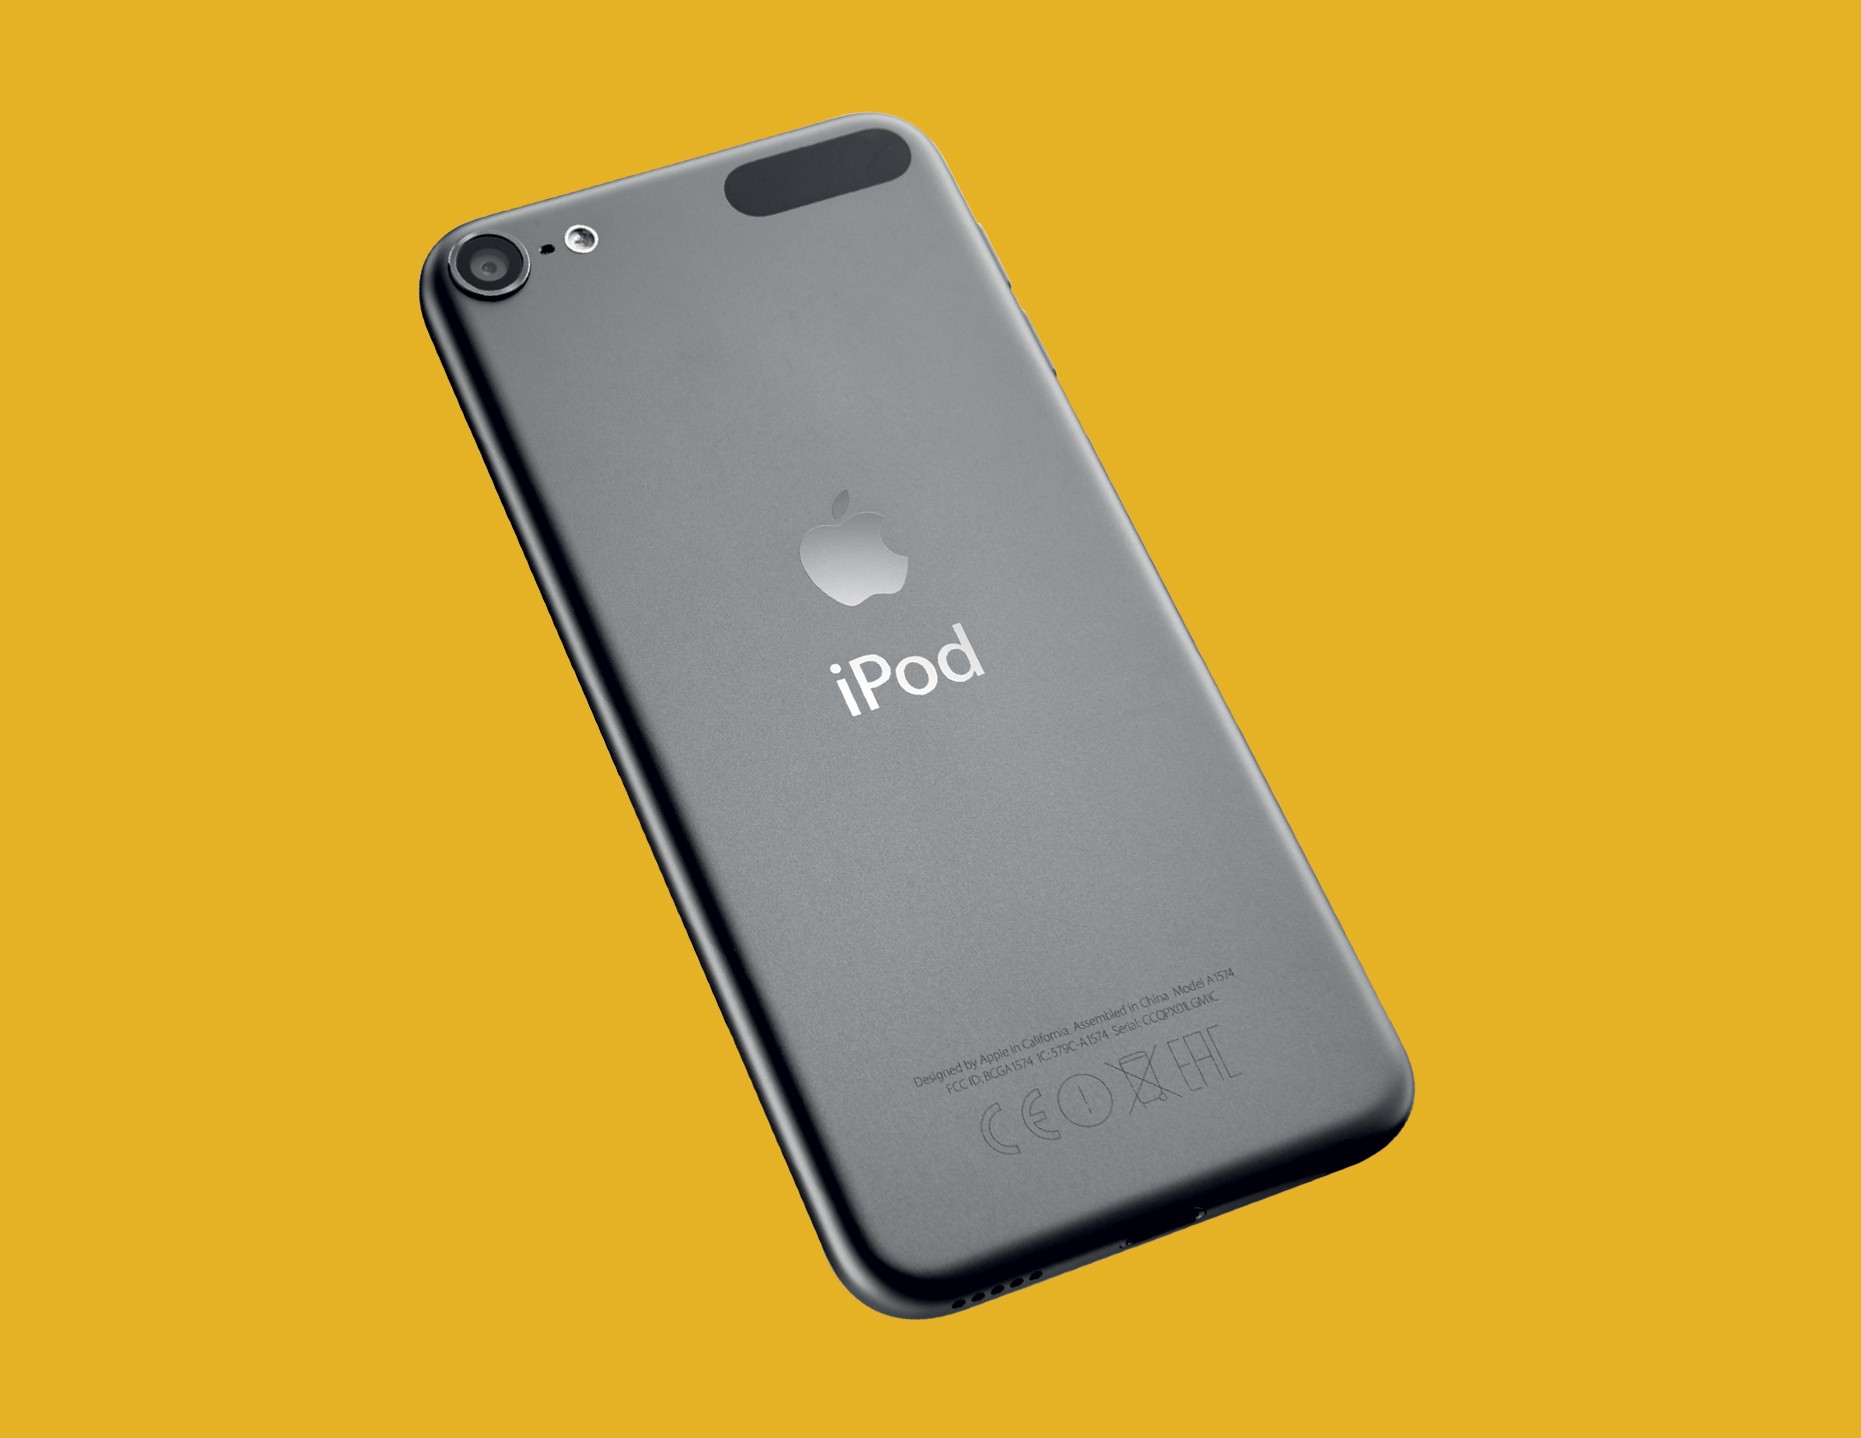 iPod Touch dostępny jest w pięciu wersjach kolorystycznych: szarej, złotej, srebrnej, niebieskiej oraz różowej.